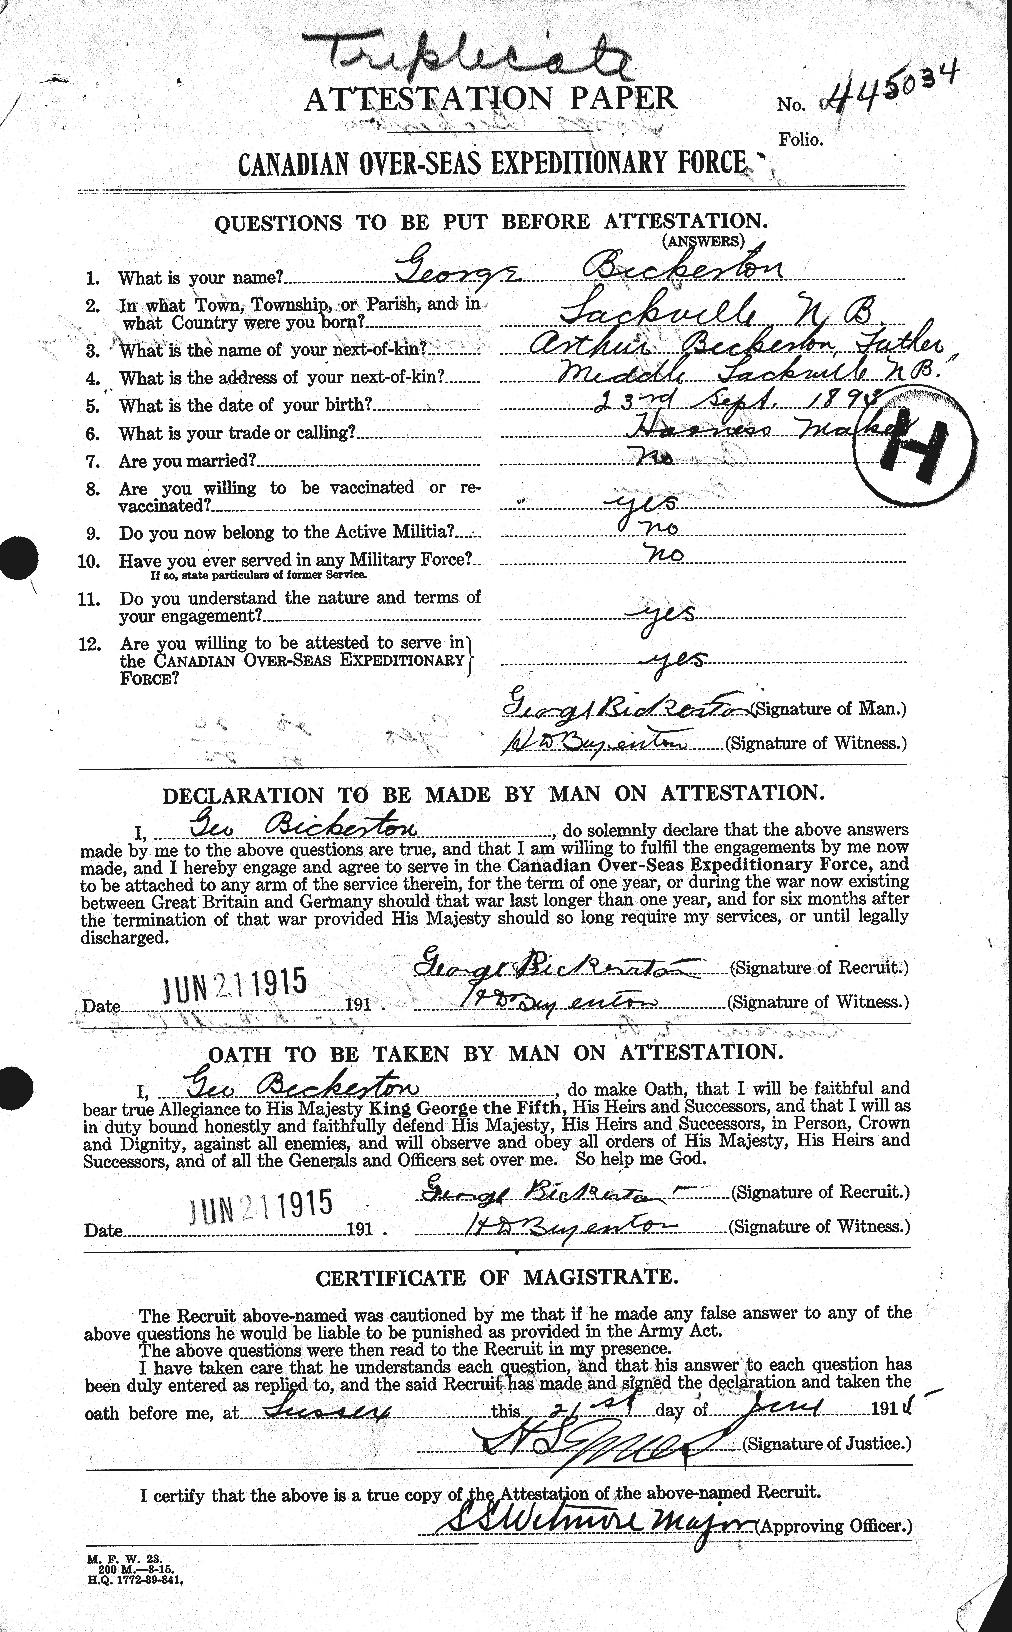 Dossiers du Personnel de la Première Guerre mondiale - CEC 244935a